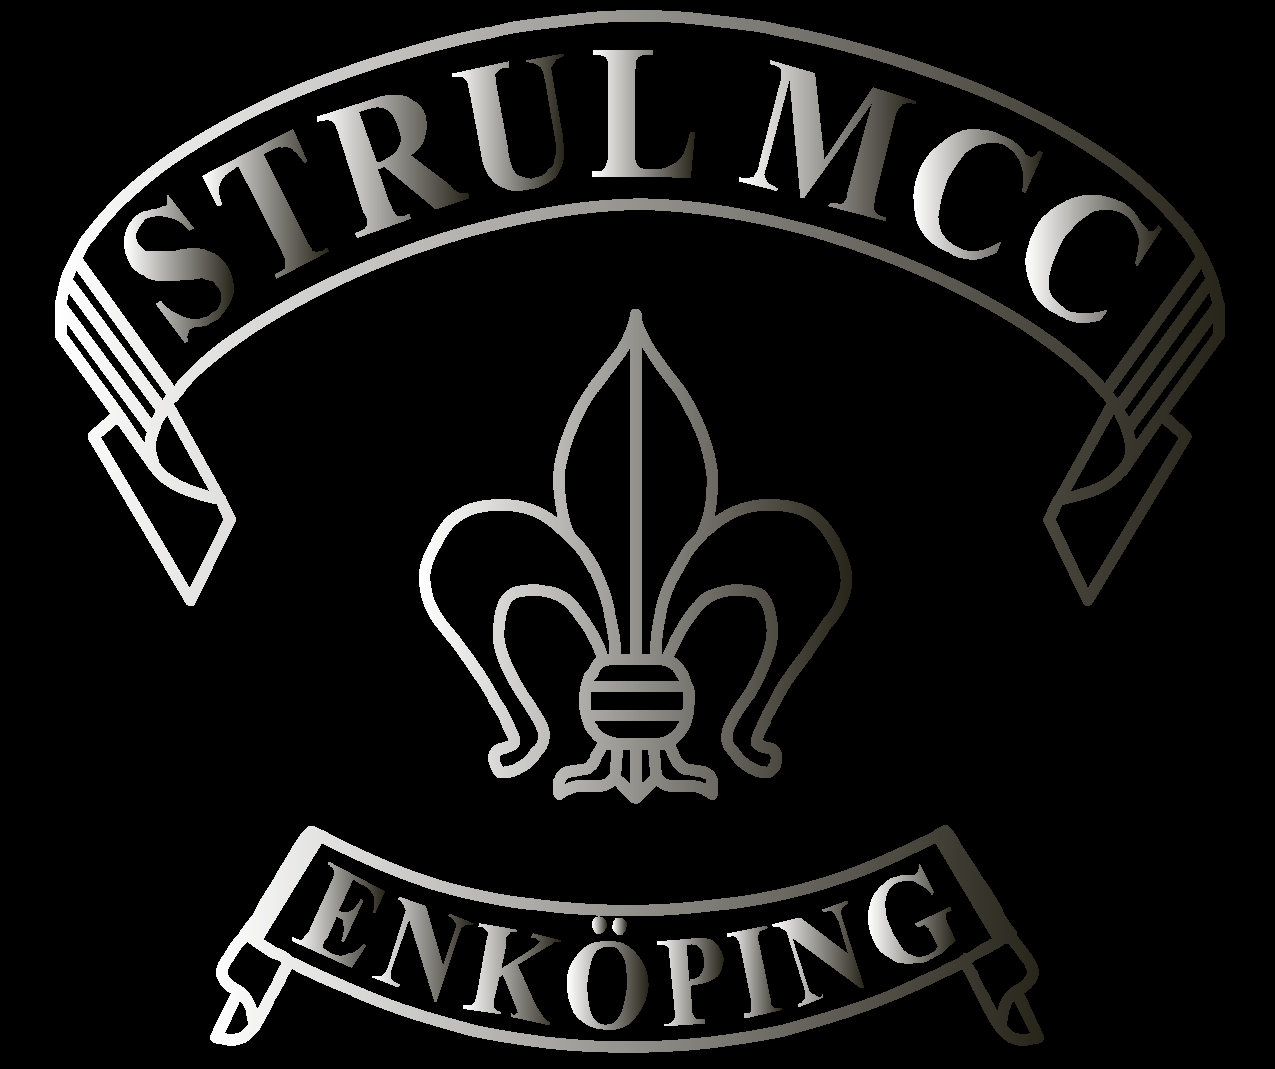 Strul MCC